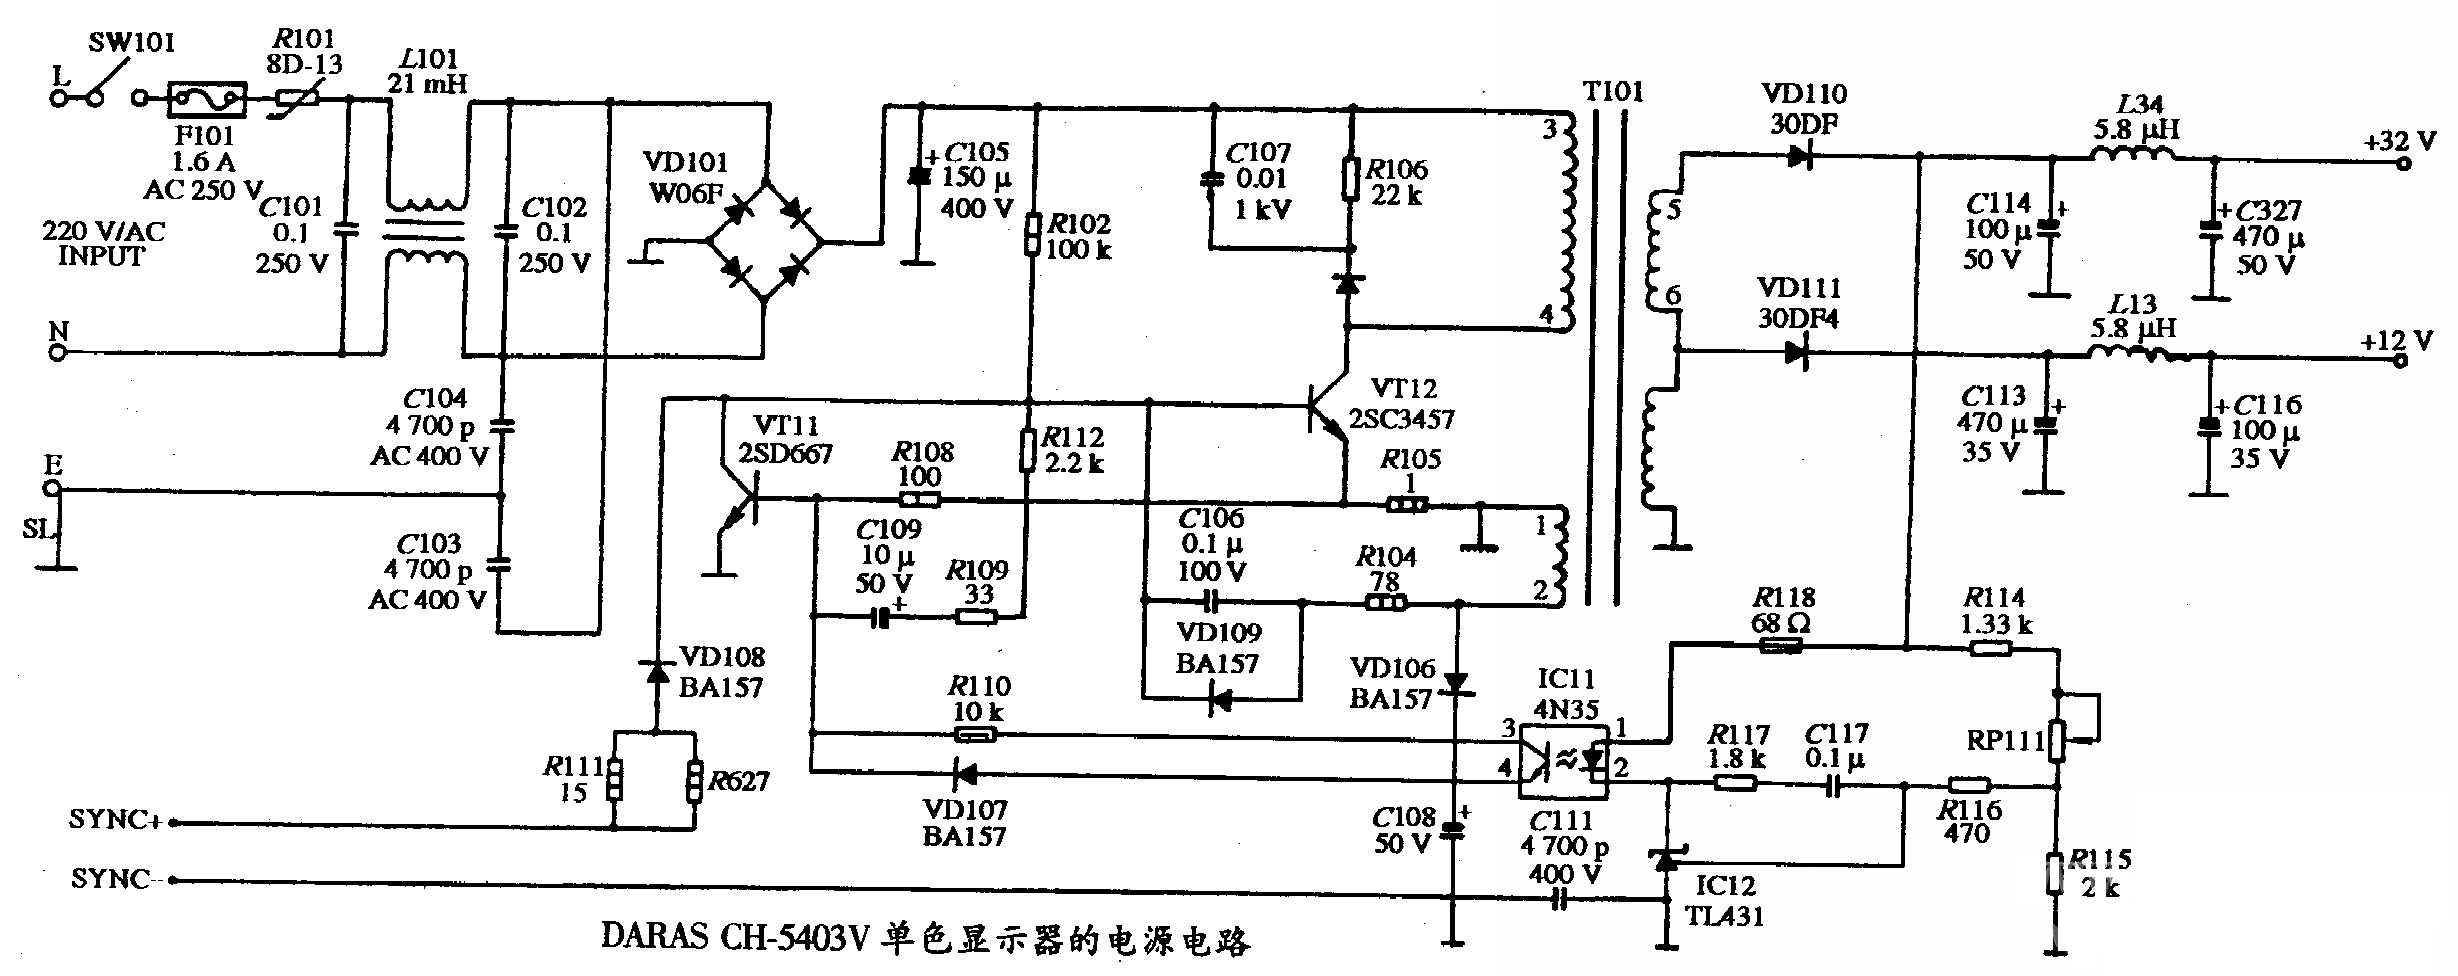 DARAS CH-5403V型单色显示器的电源电路图